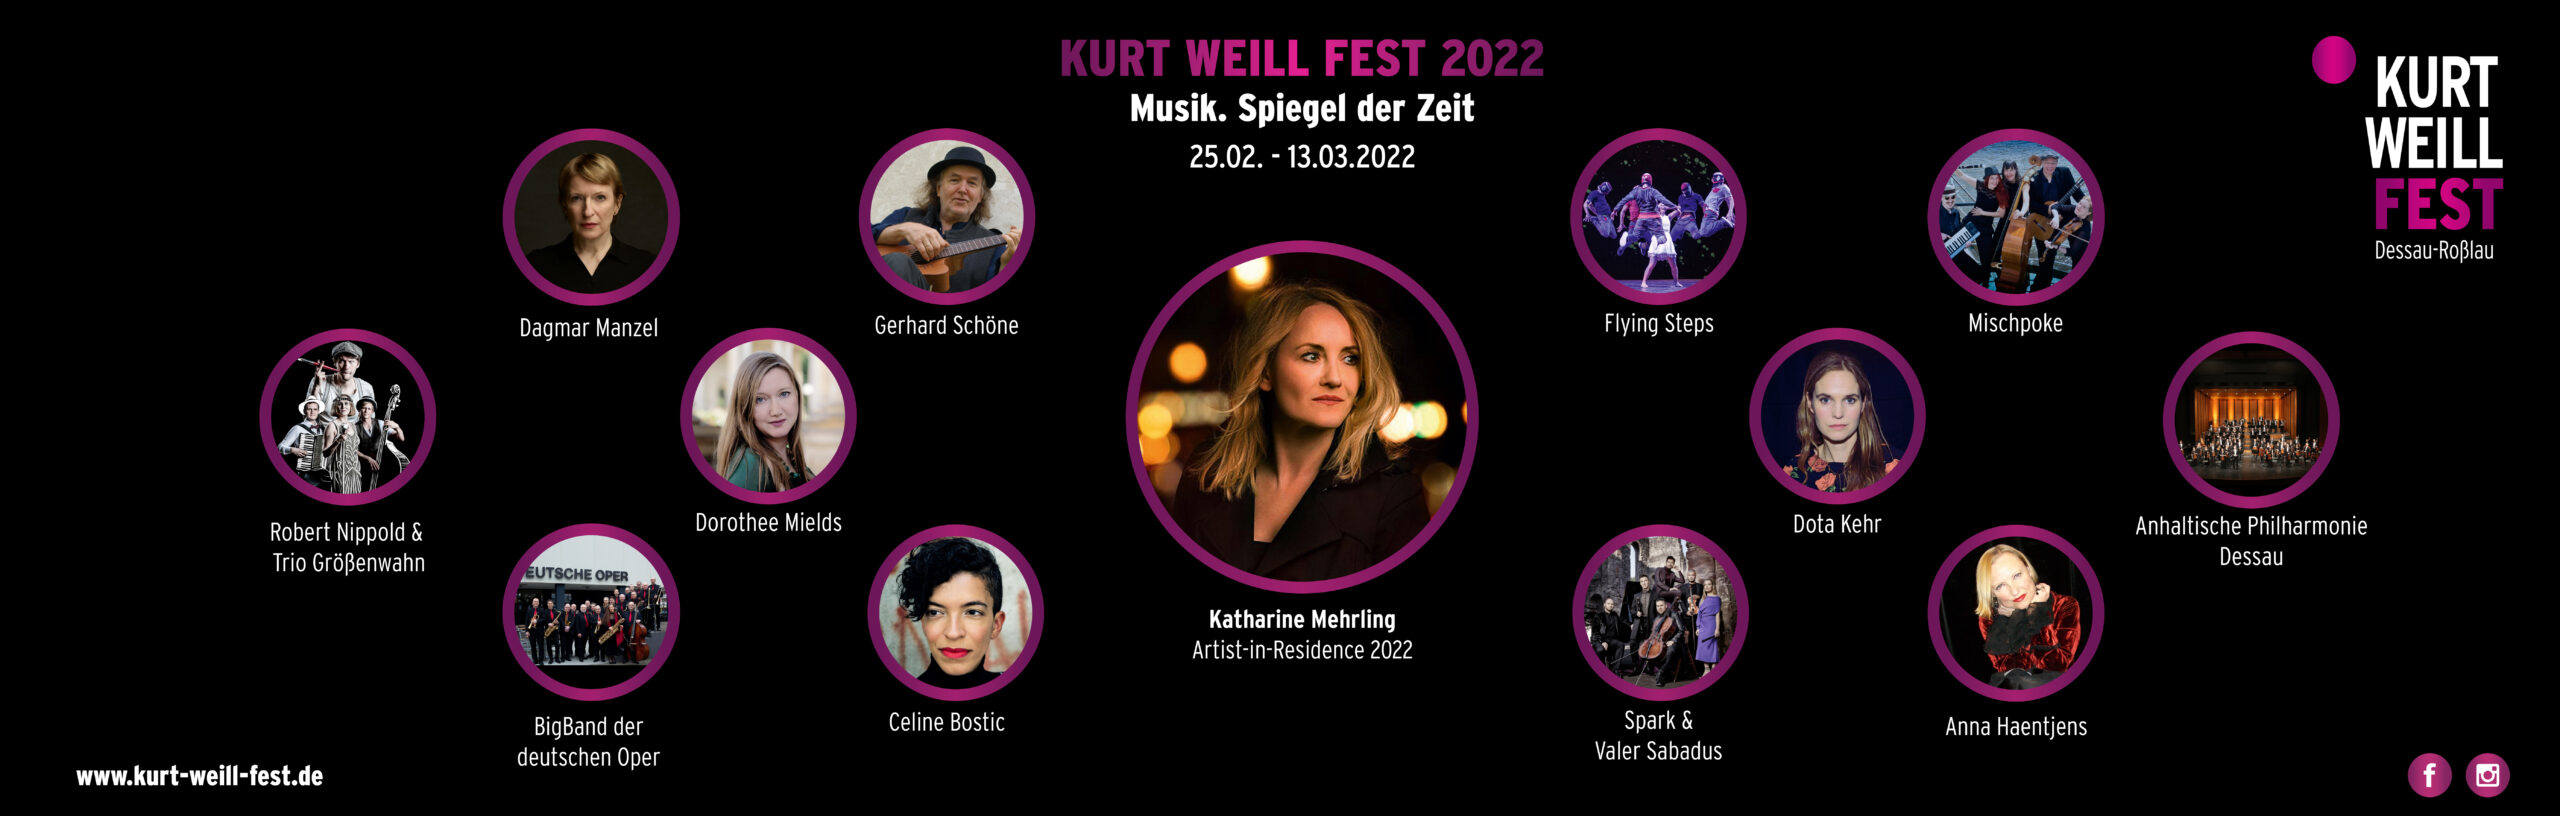 Flyer zum Kurt Weill fest 2022